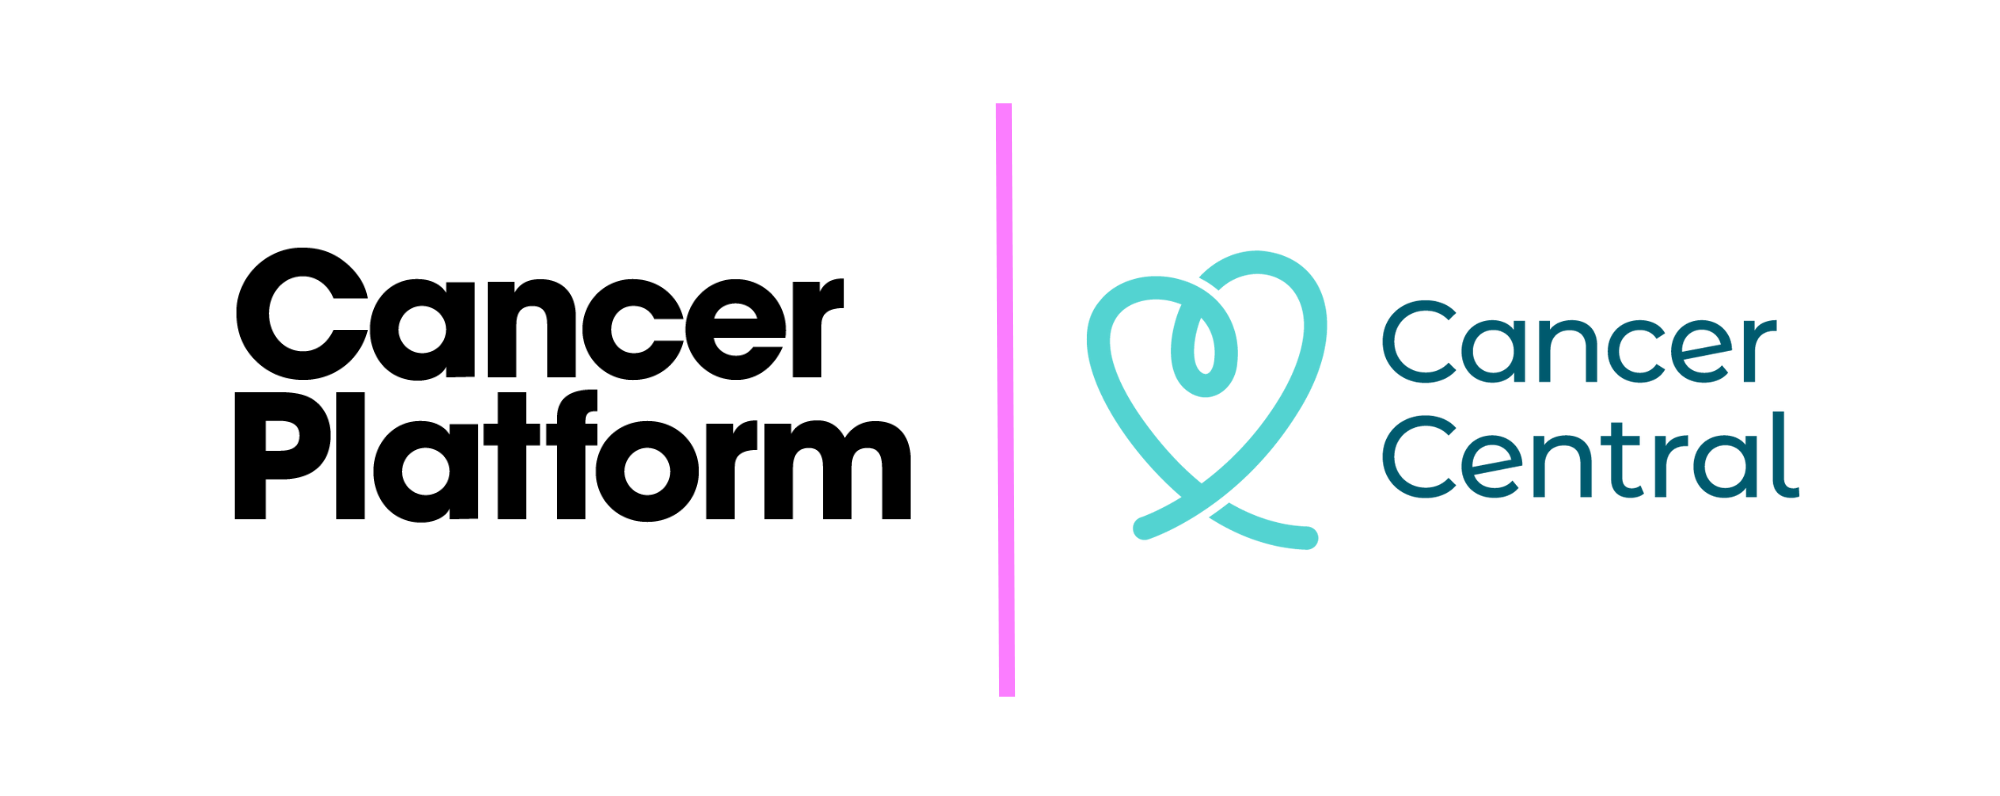 Cancer central founding partner of the Cancer Platform